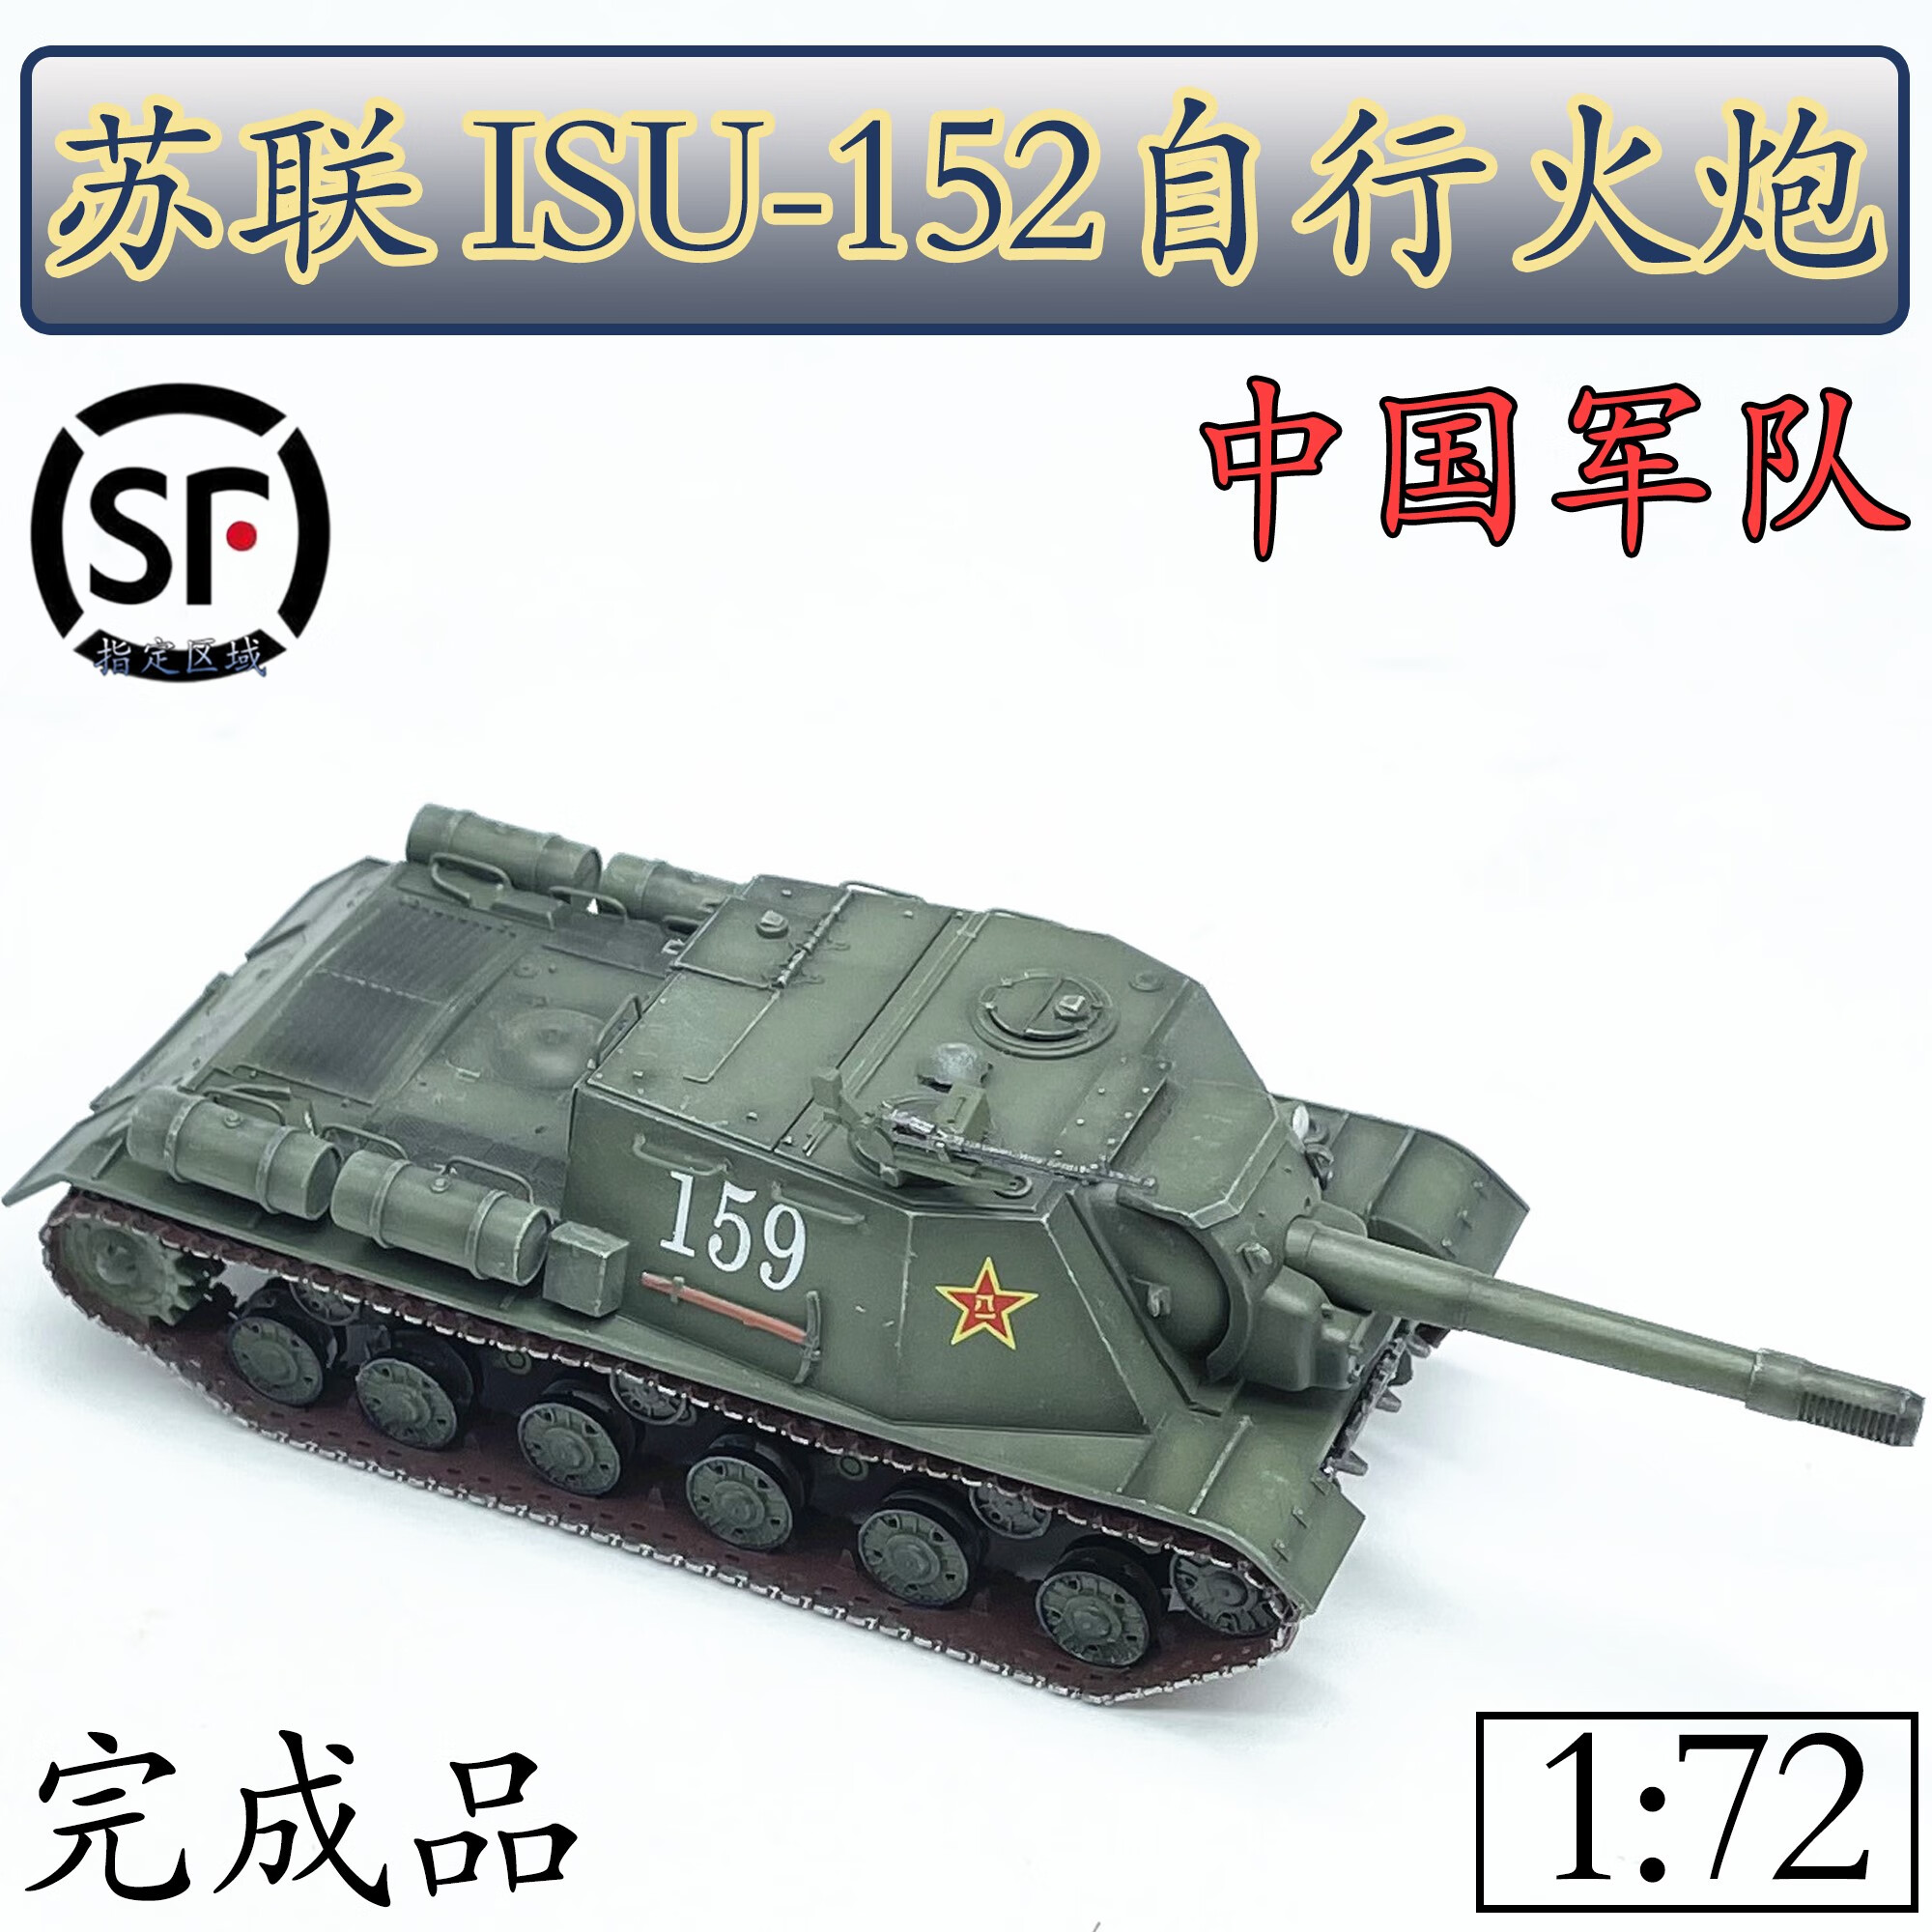 天智星二战苏联坦克模型1:72苏联ISU152自行火炮坦克中国军 静态成品摆